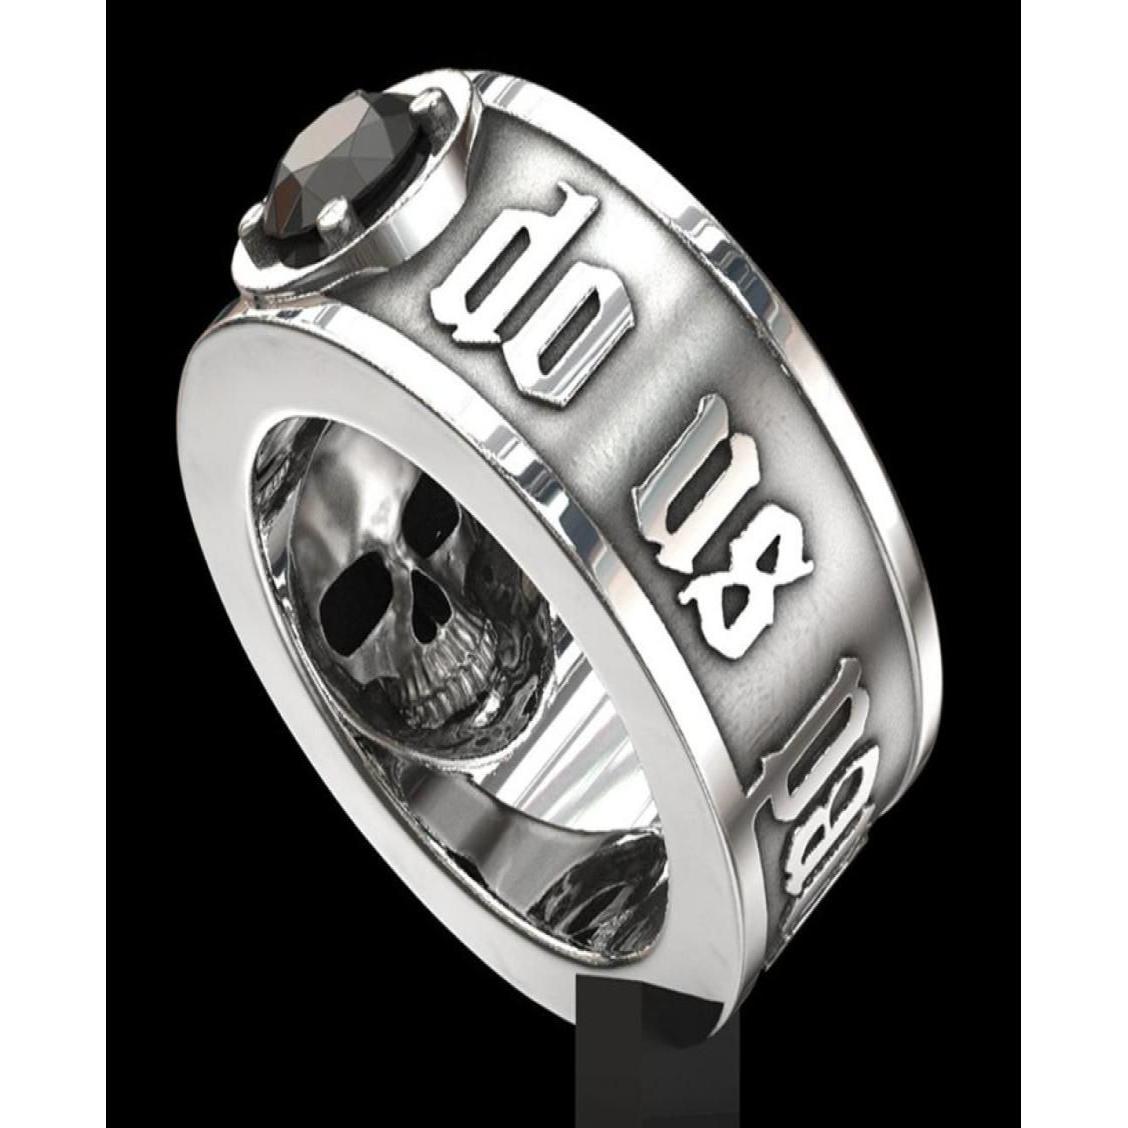 Кольца полосы 039till Death Do US Part039 из нержавеющей стали SKL Ring Black Diamond Punk Wedding Jewelry для мужчин размером 6 1336815 Dhol1